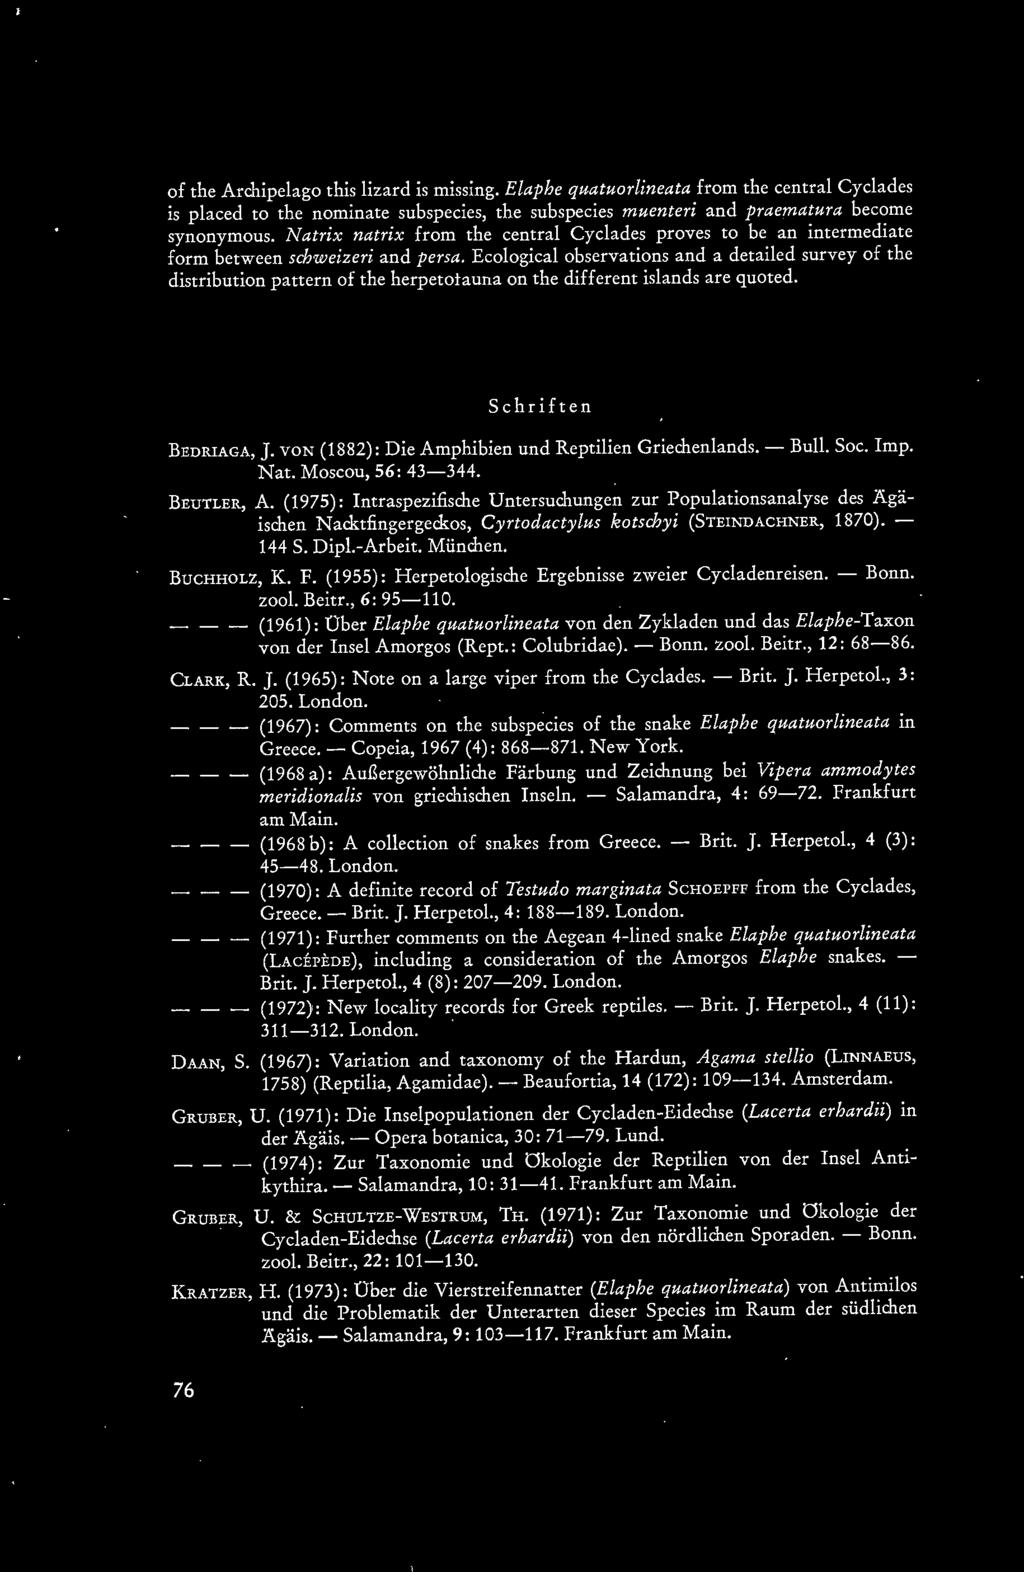 (1975): Intraspezifische Untersuchungen zur Populationsanalyse des Agäischen Nacktfingergeckos, Cyrtodactylus kotschyi (STEINDACHNER, 1870). - 144 S. Dipl.-Arbeit. München. BUCHHOLZ, K. F.